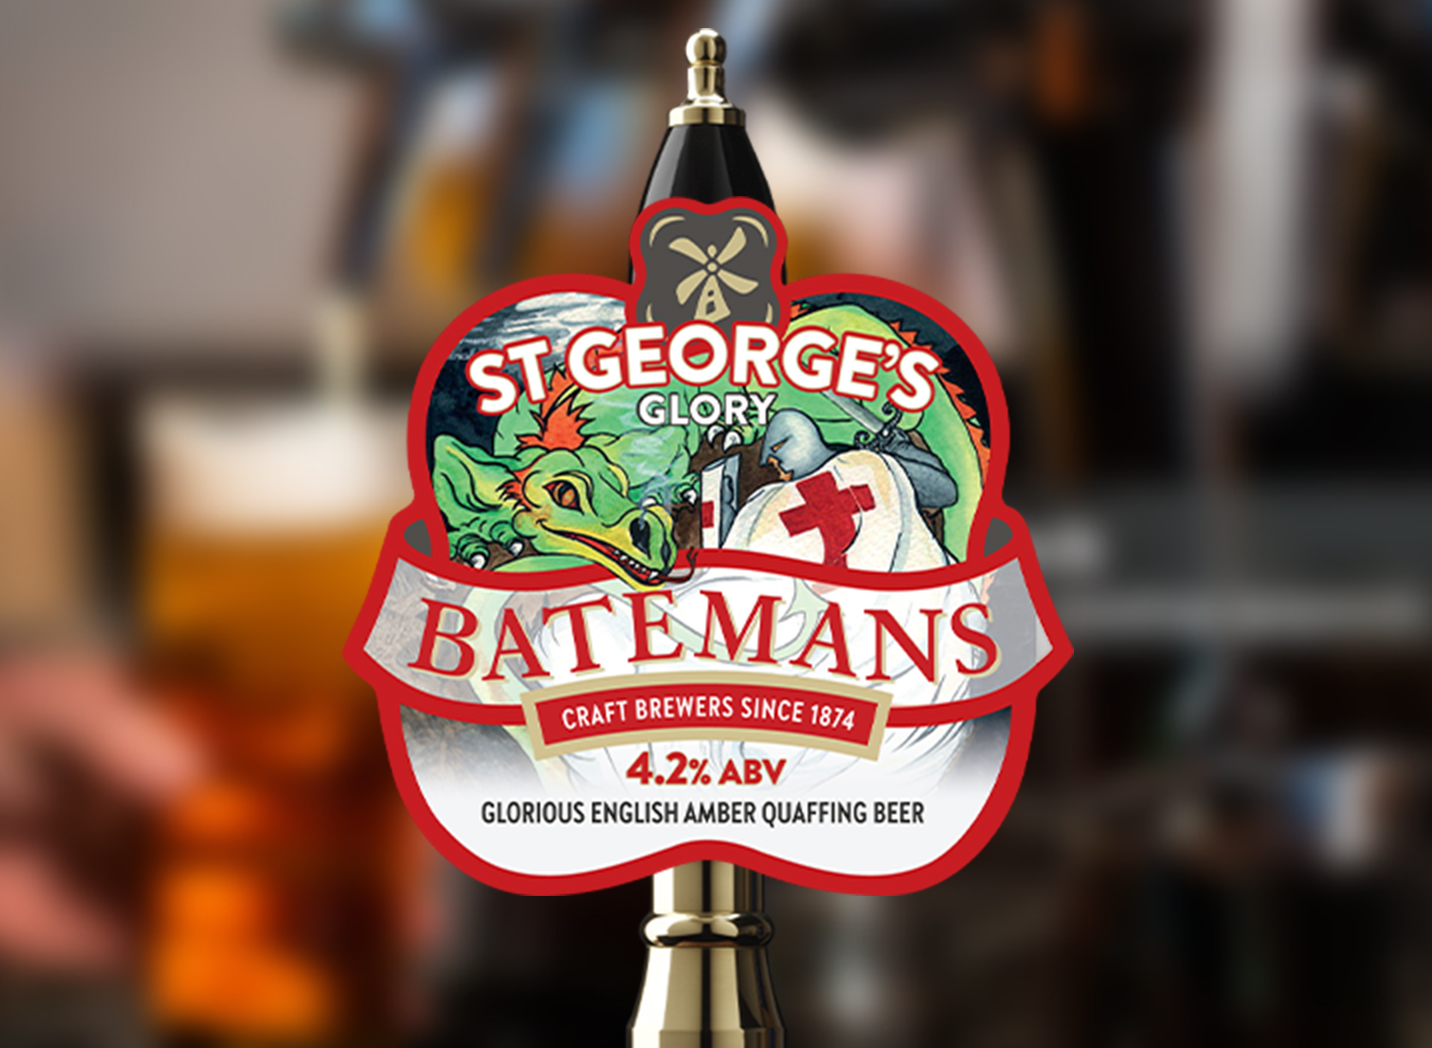 St George's Glory Batemans Beer